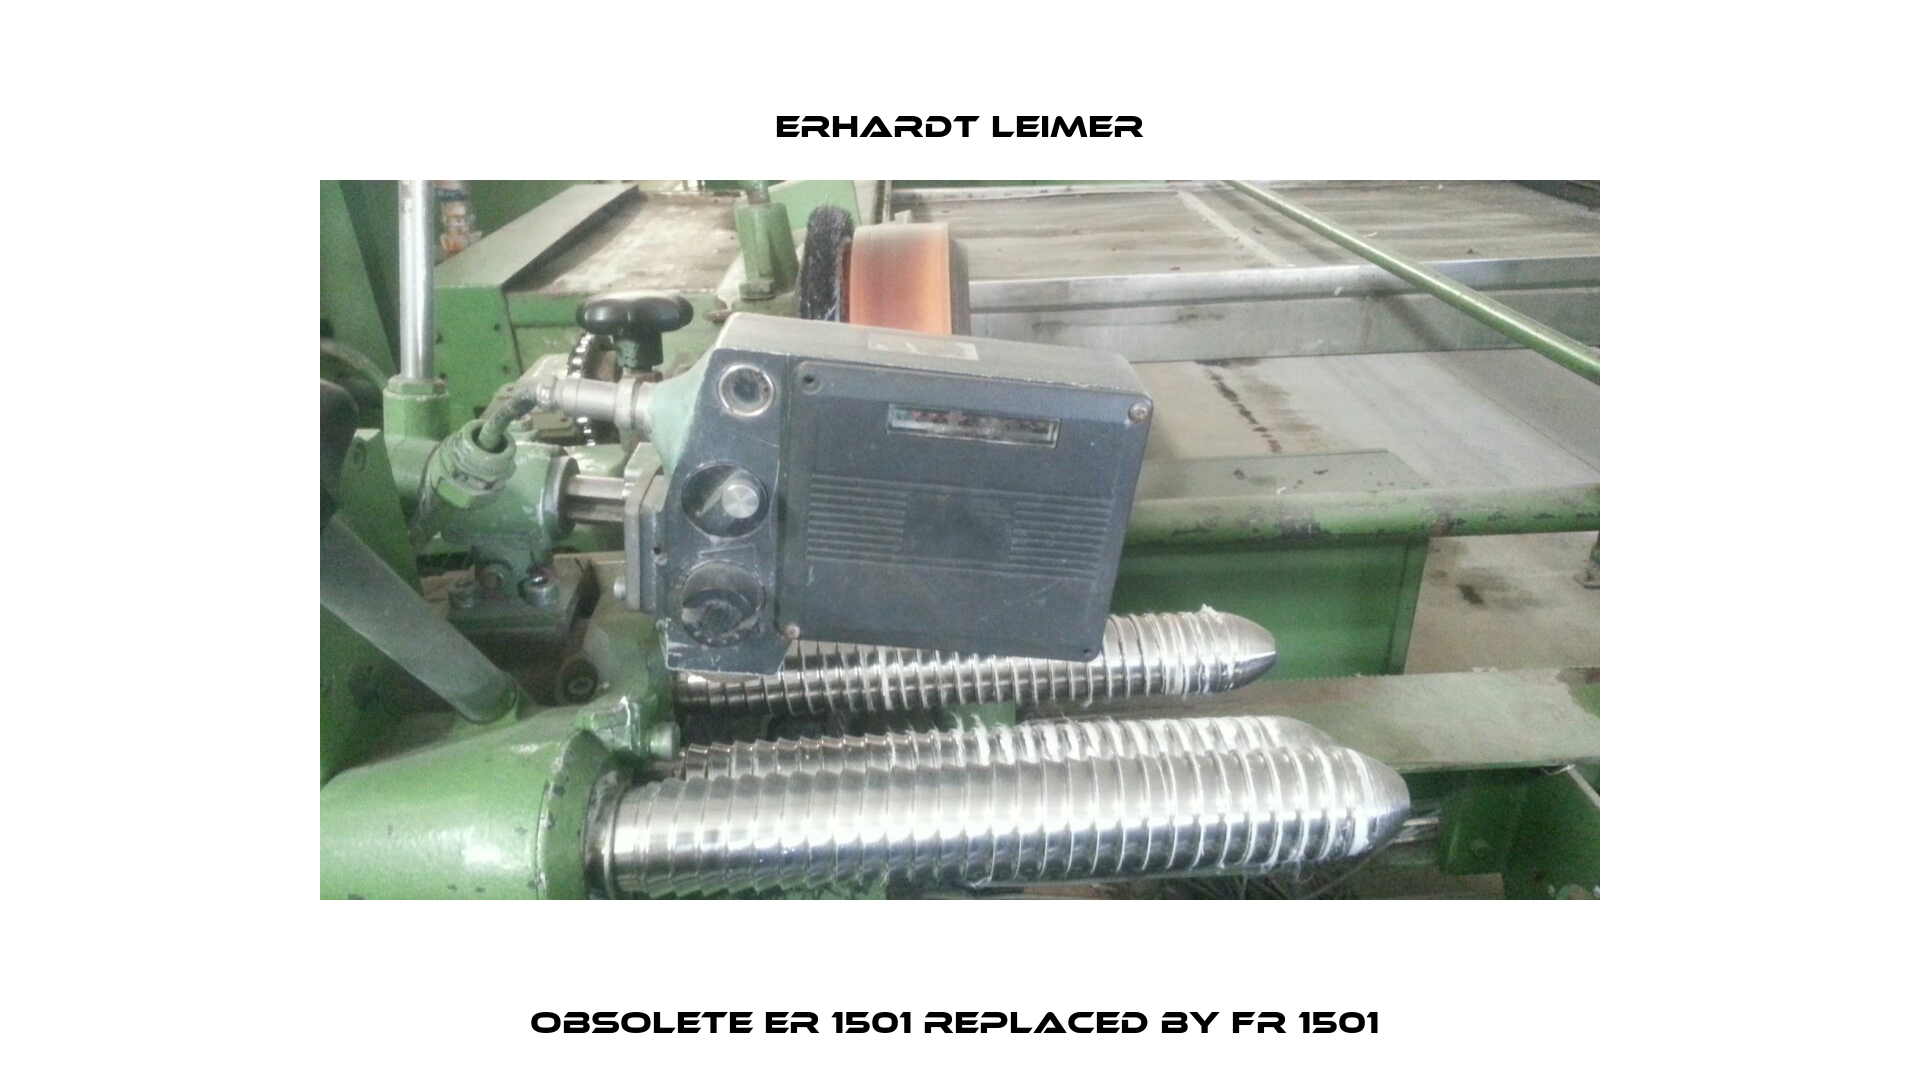 Obsolete ER 1501 replaced by FR 1501  Erhardt Leimer